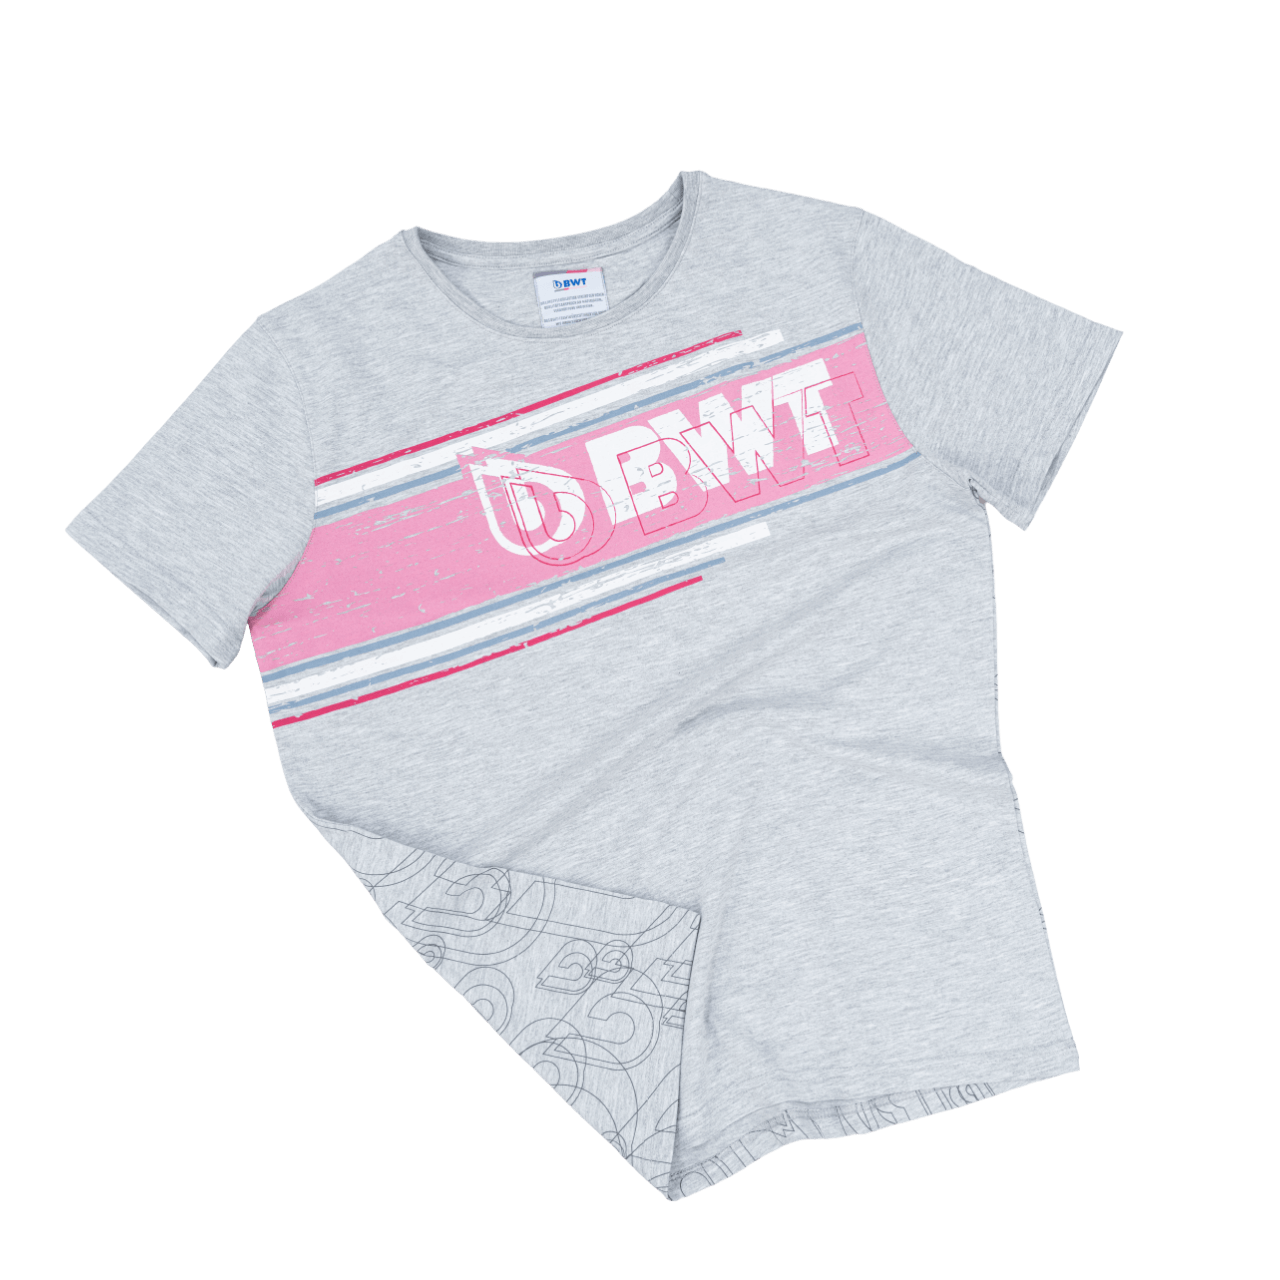 BWT Lifestyle T-shirt Herren grau mit weißem BWT Logo auf pinkem Hintergrund